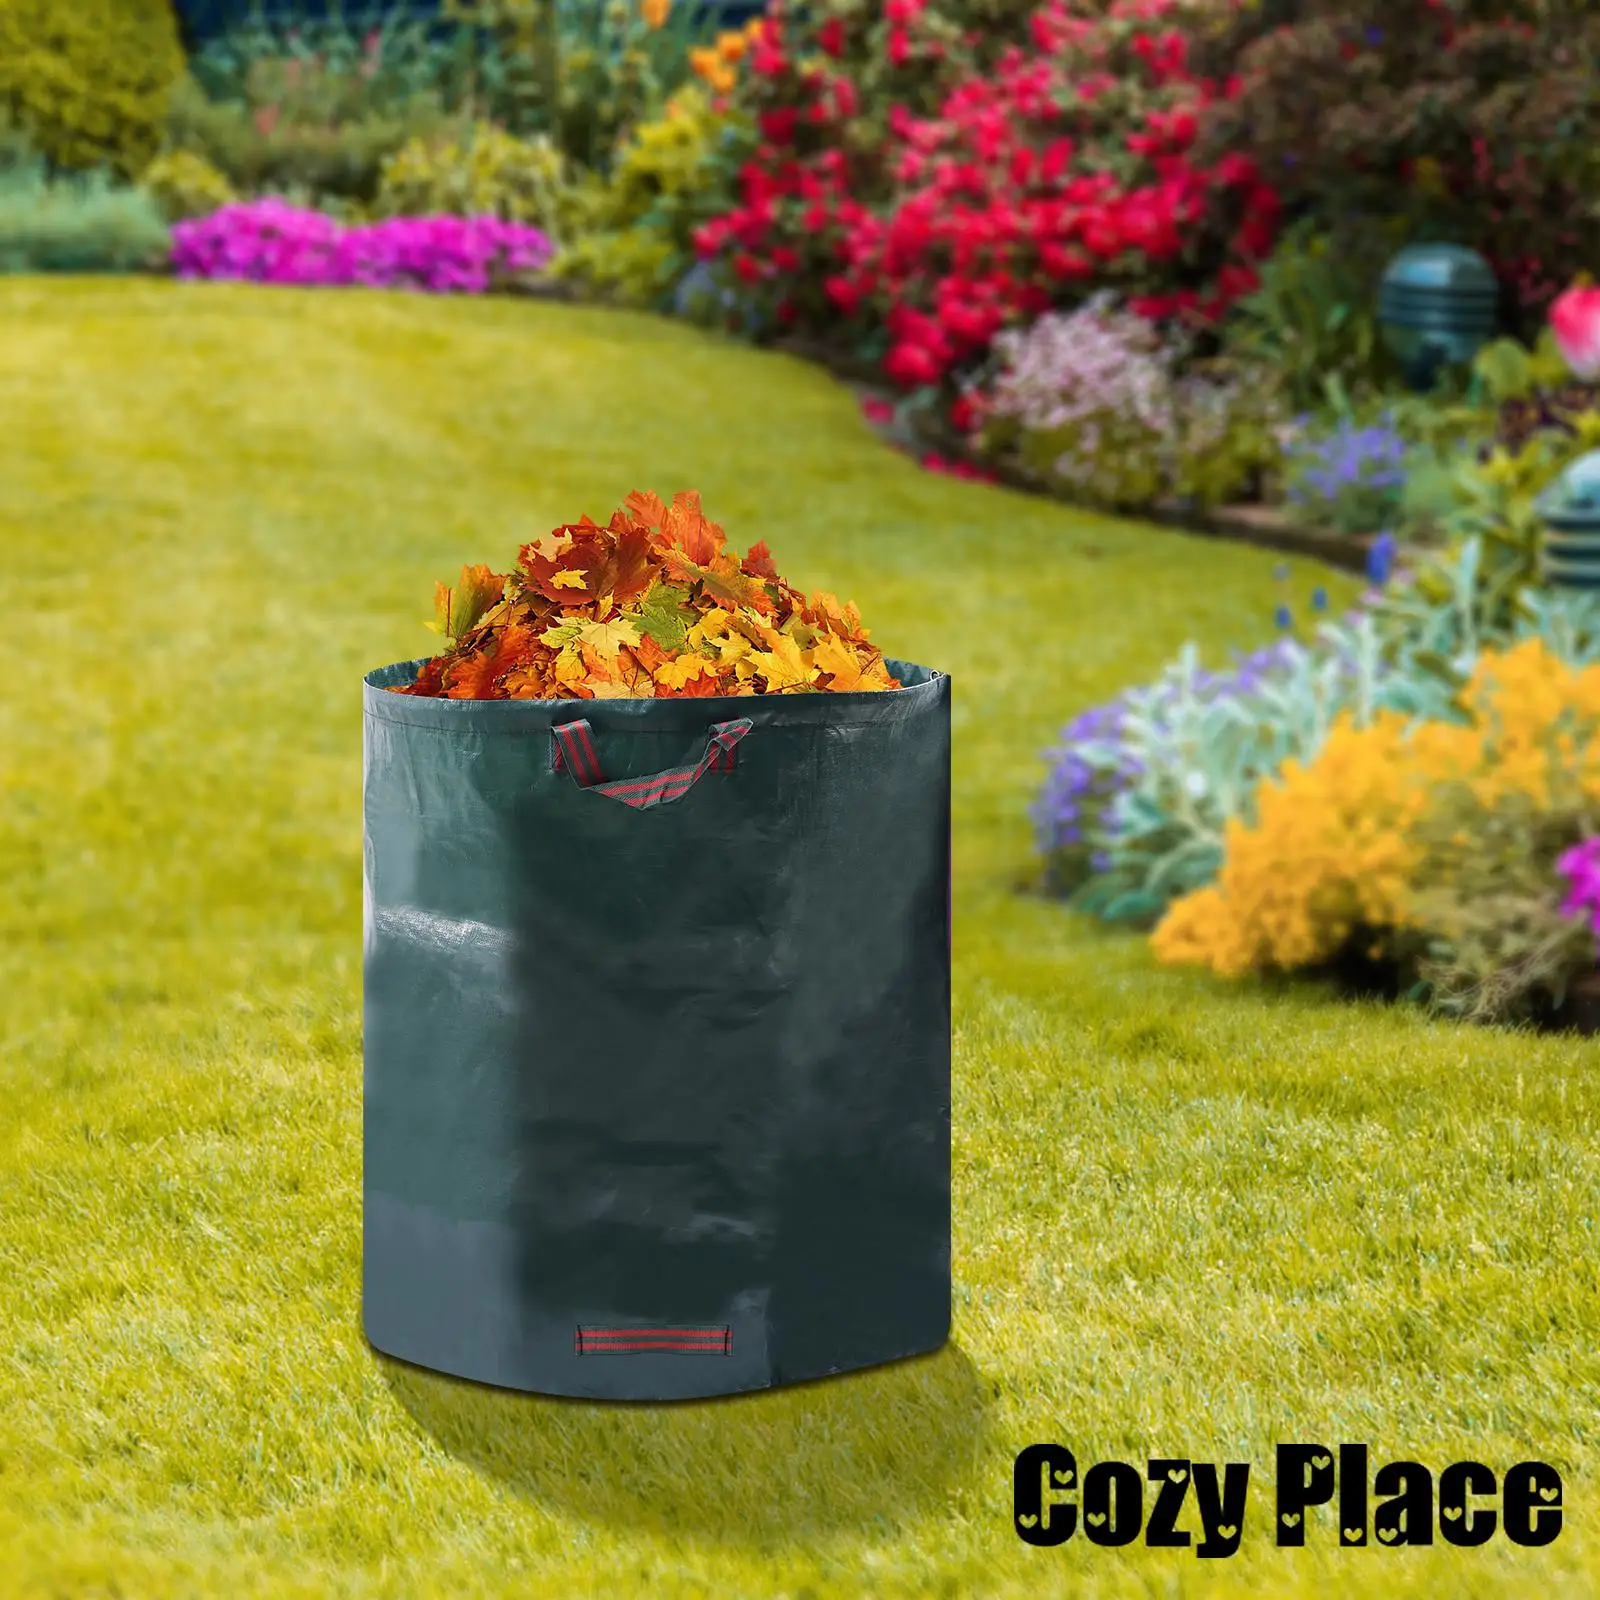 

Мешок для садовых отходов 80 галлонов, многоразовый мешок для мусора, галлоновый садовый мешок для хранения листьев с ручками, водонепроницаемый мешок для хранения листьев